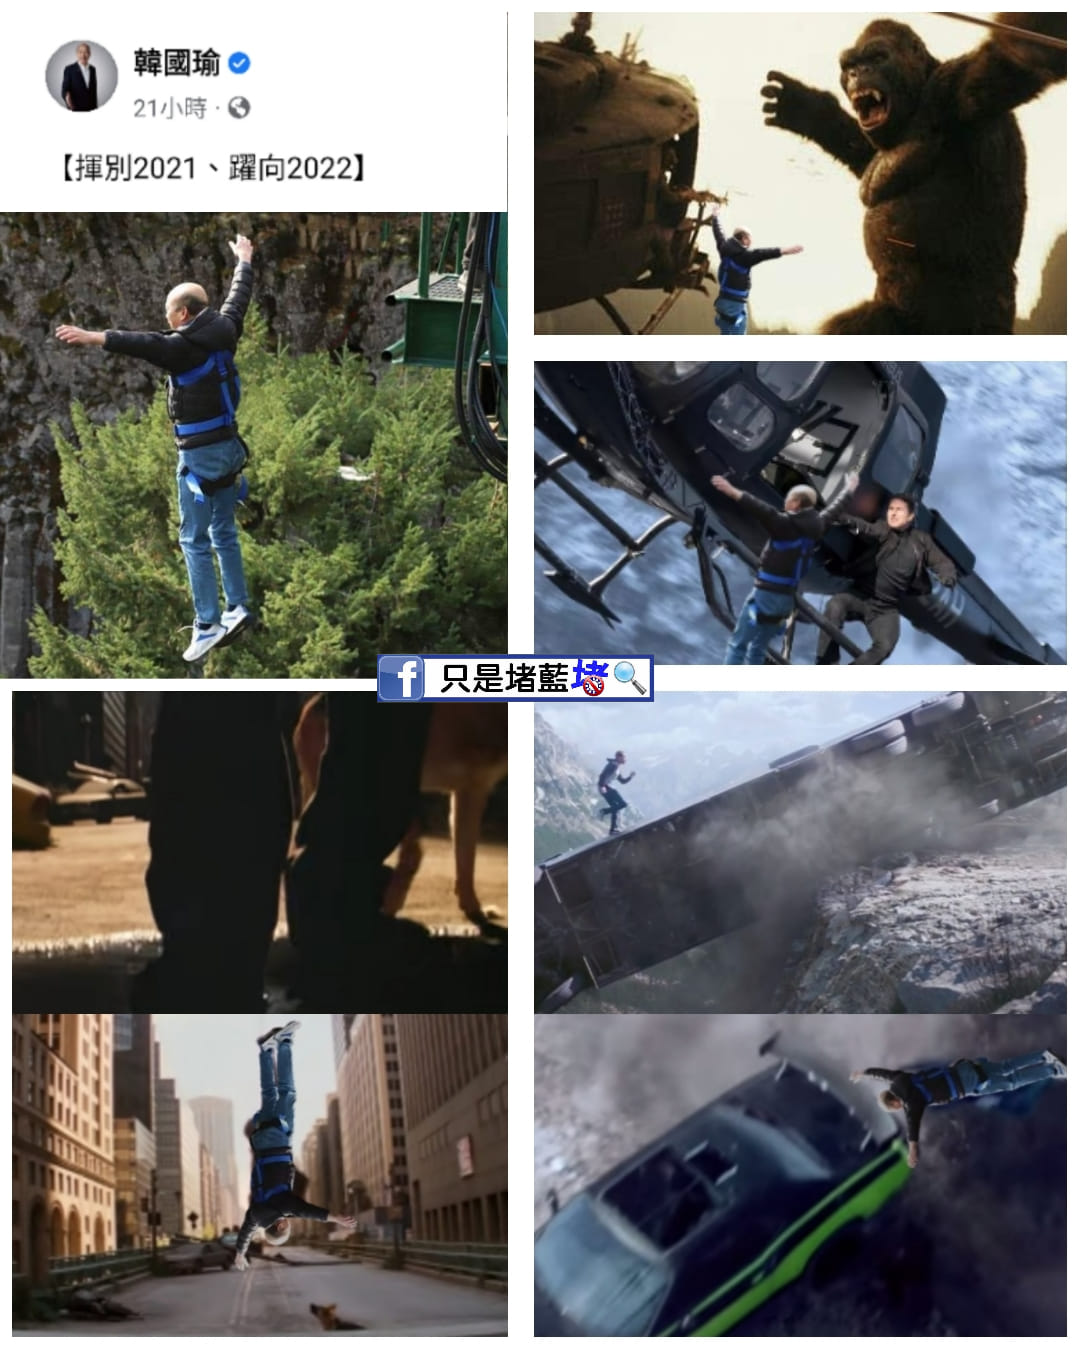 臉書賬號《只是堵藍》將韓國瑜高空彈跳的照片做成梗圖與臉書粉絲分享。 截取自《只是堵藍》臉書